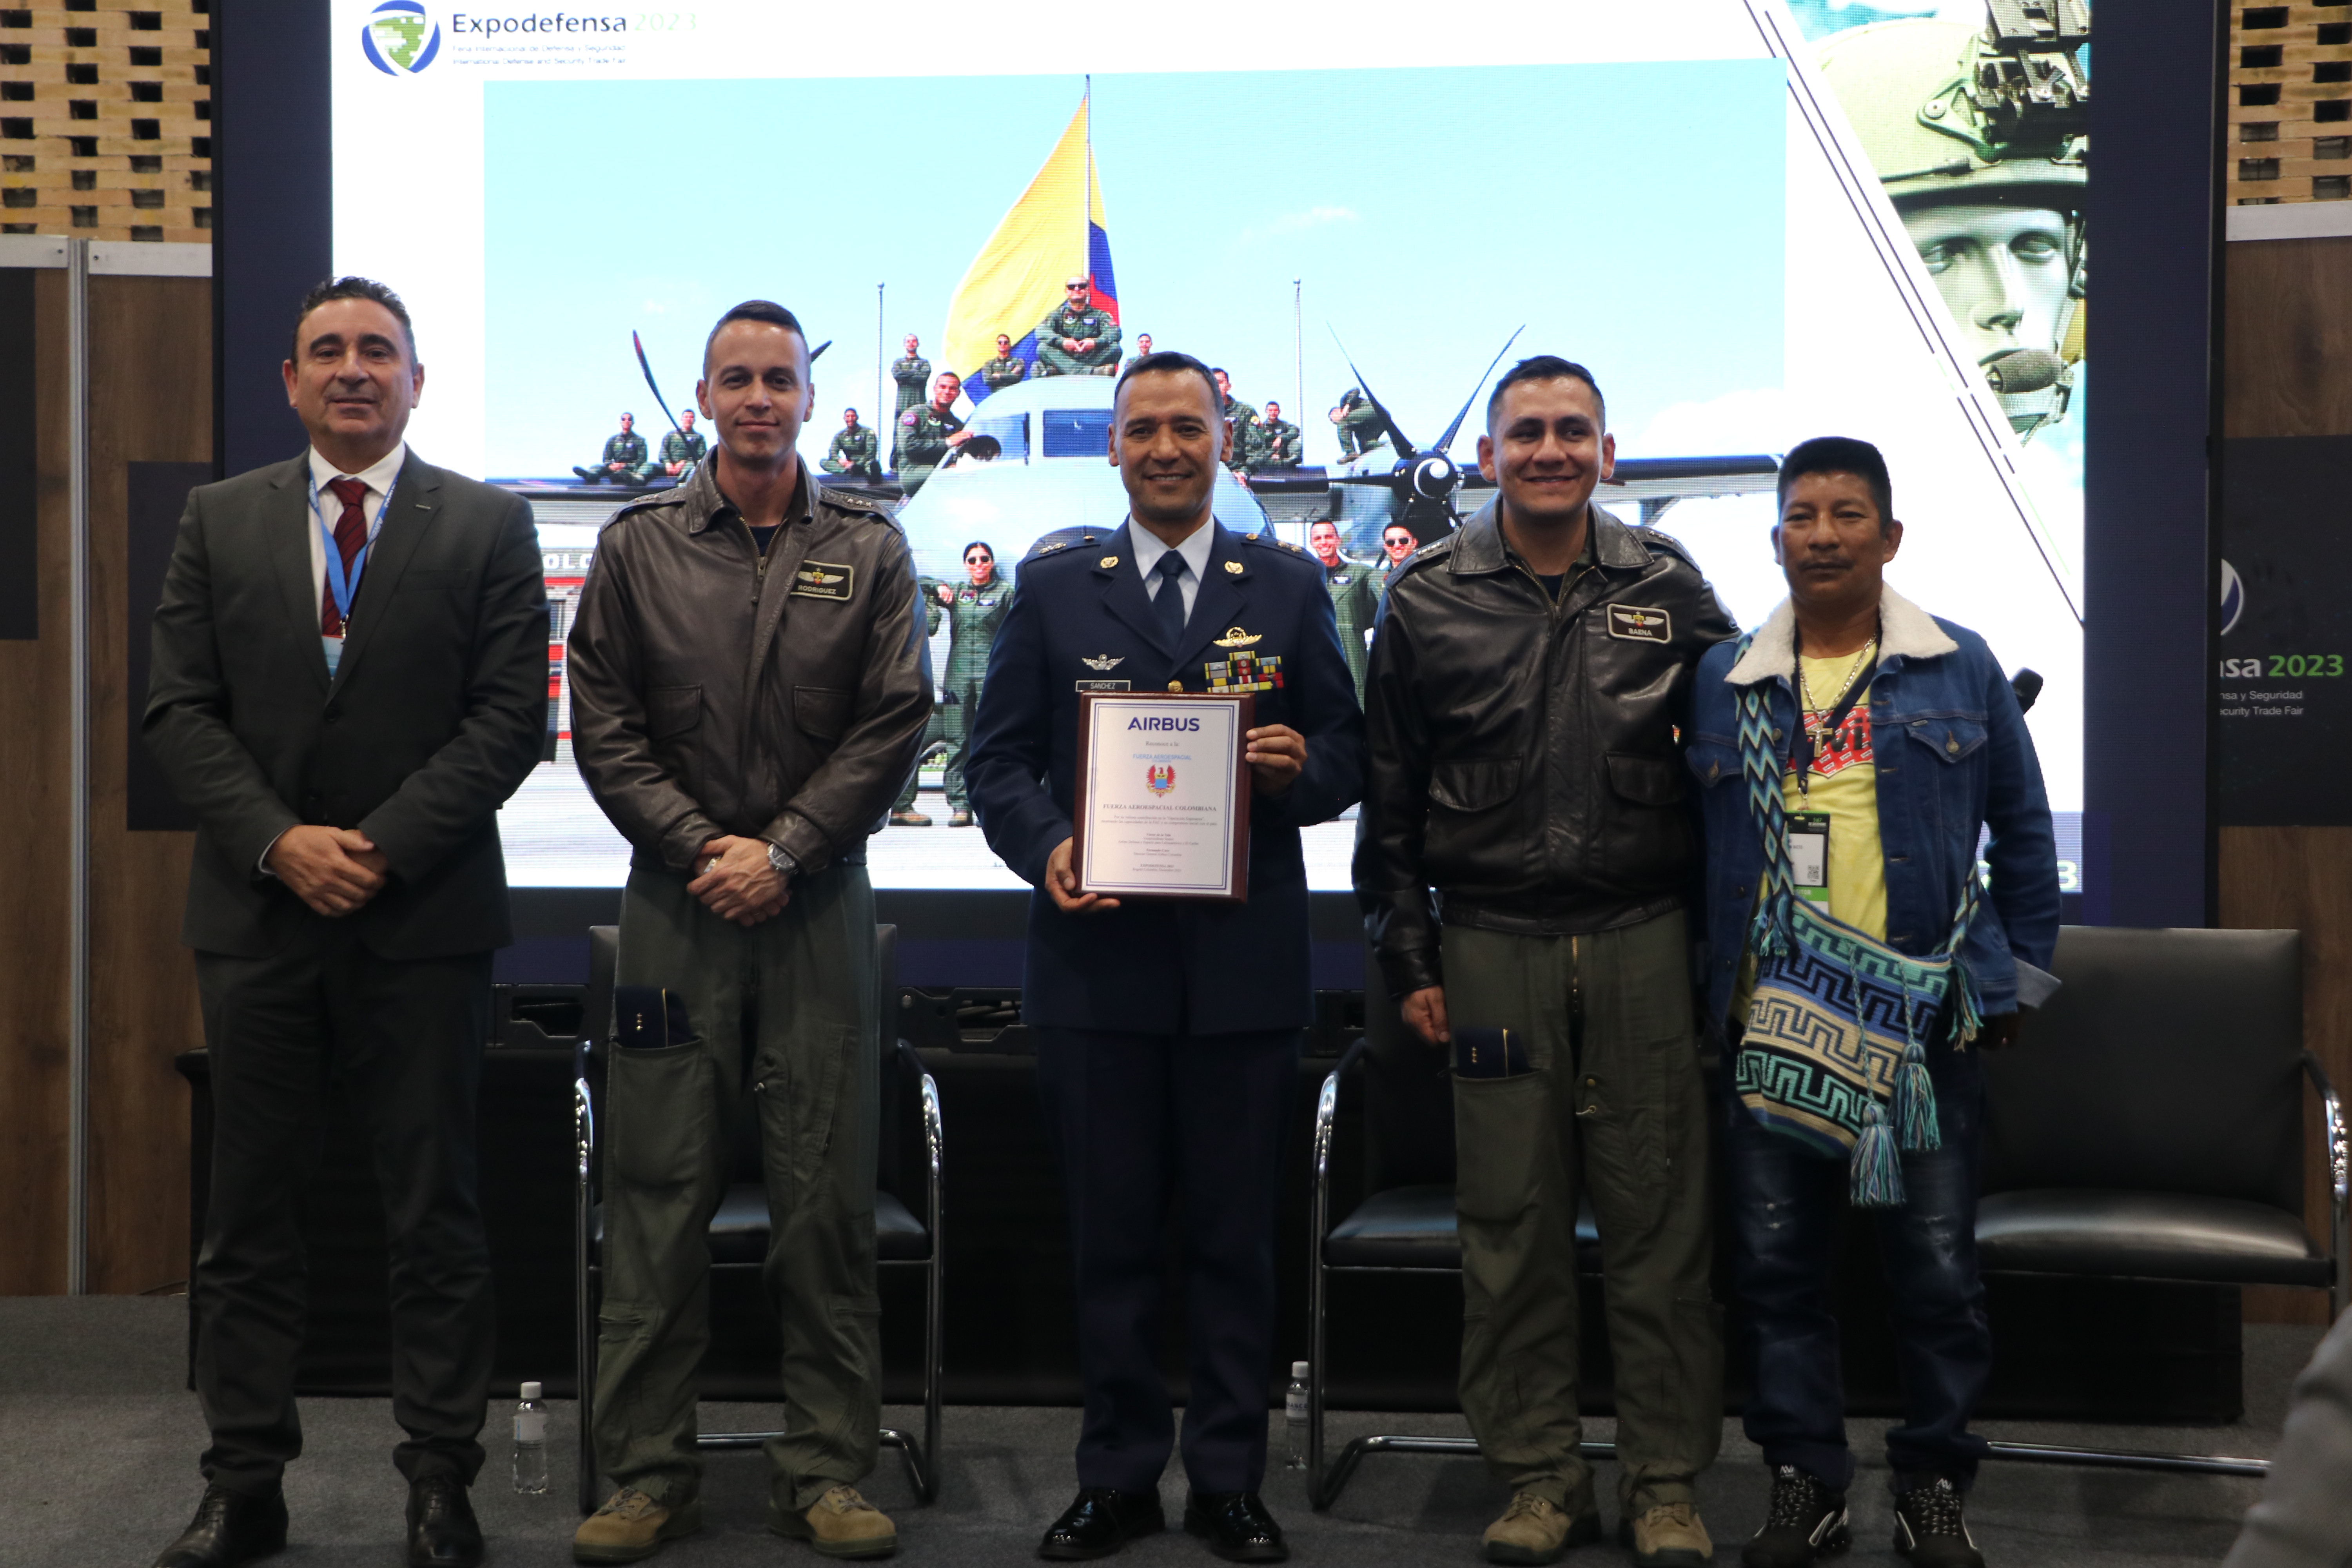 Reconocimiento a la tripulación del C-295 que participó en la Operación Esperanza en EXPODEFENSA 2023